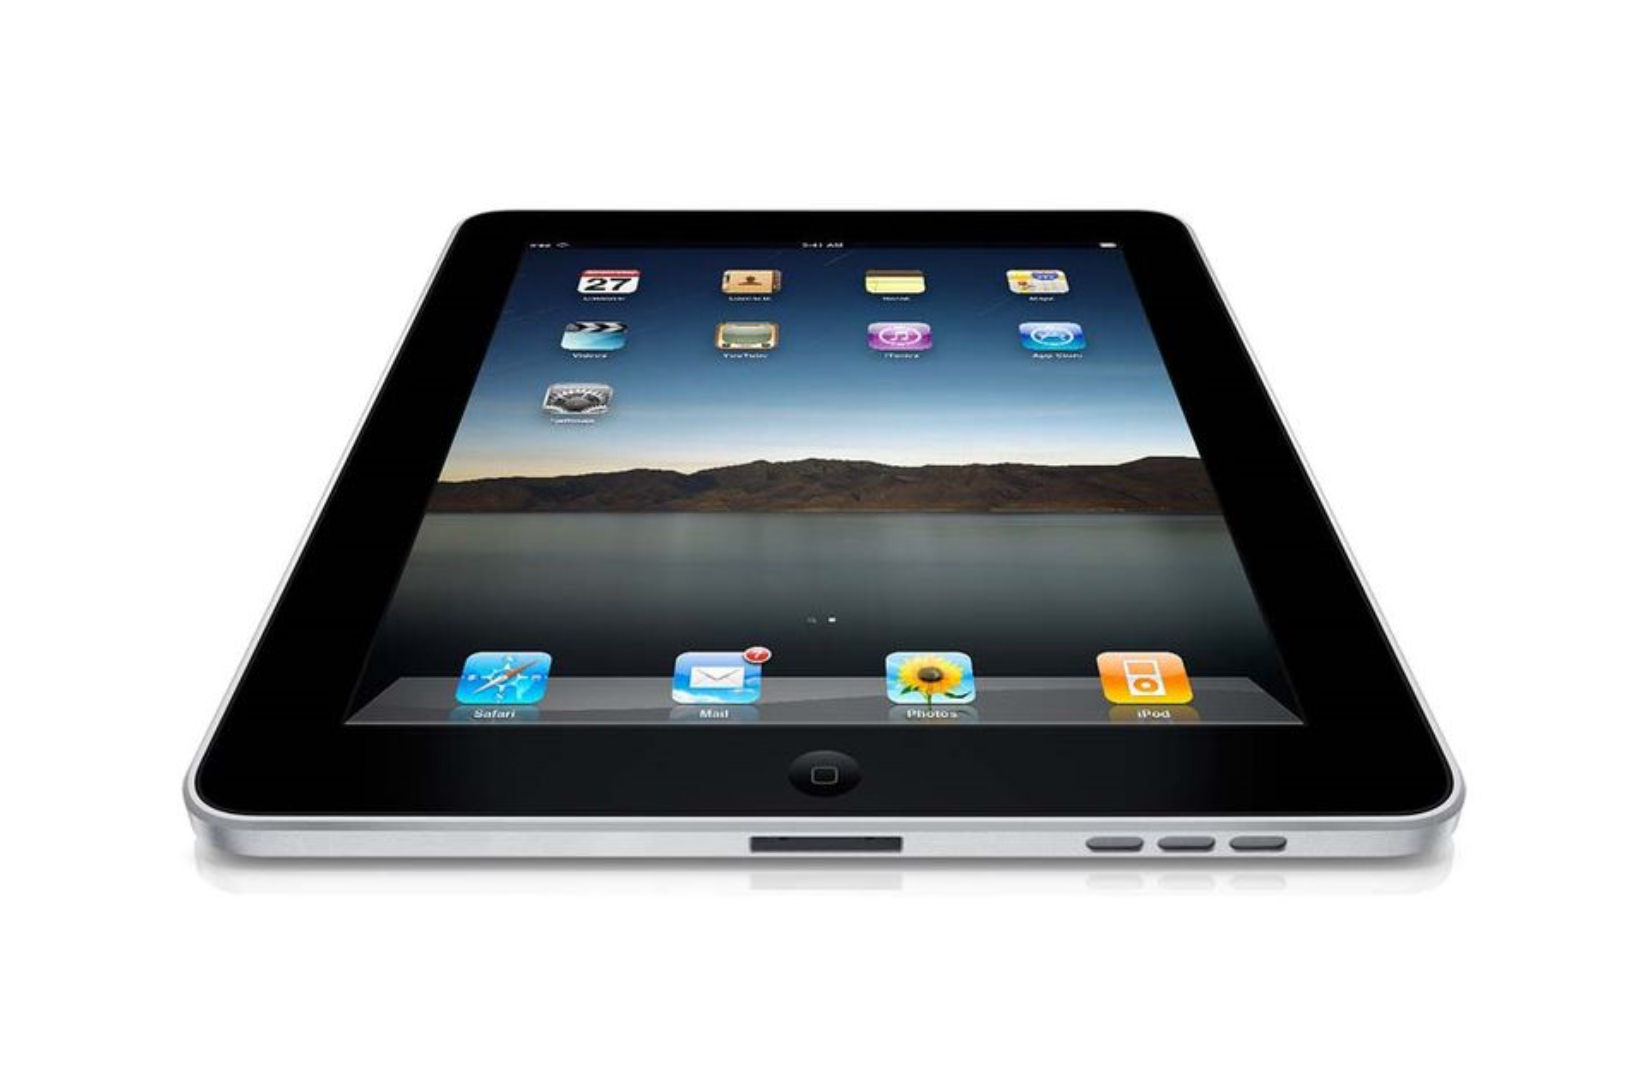 La evolución y mejoras del iPad desde su lanzamiento - Blog K-tuin